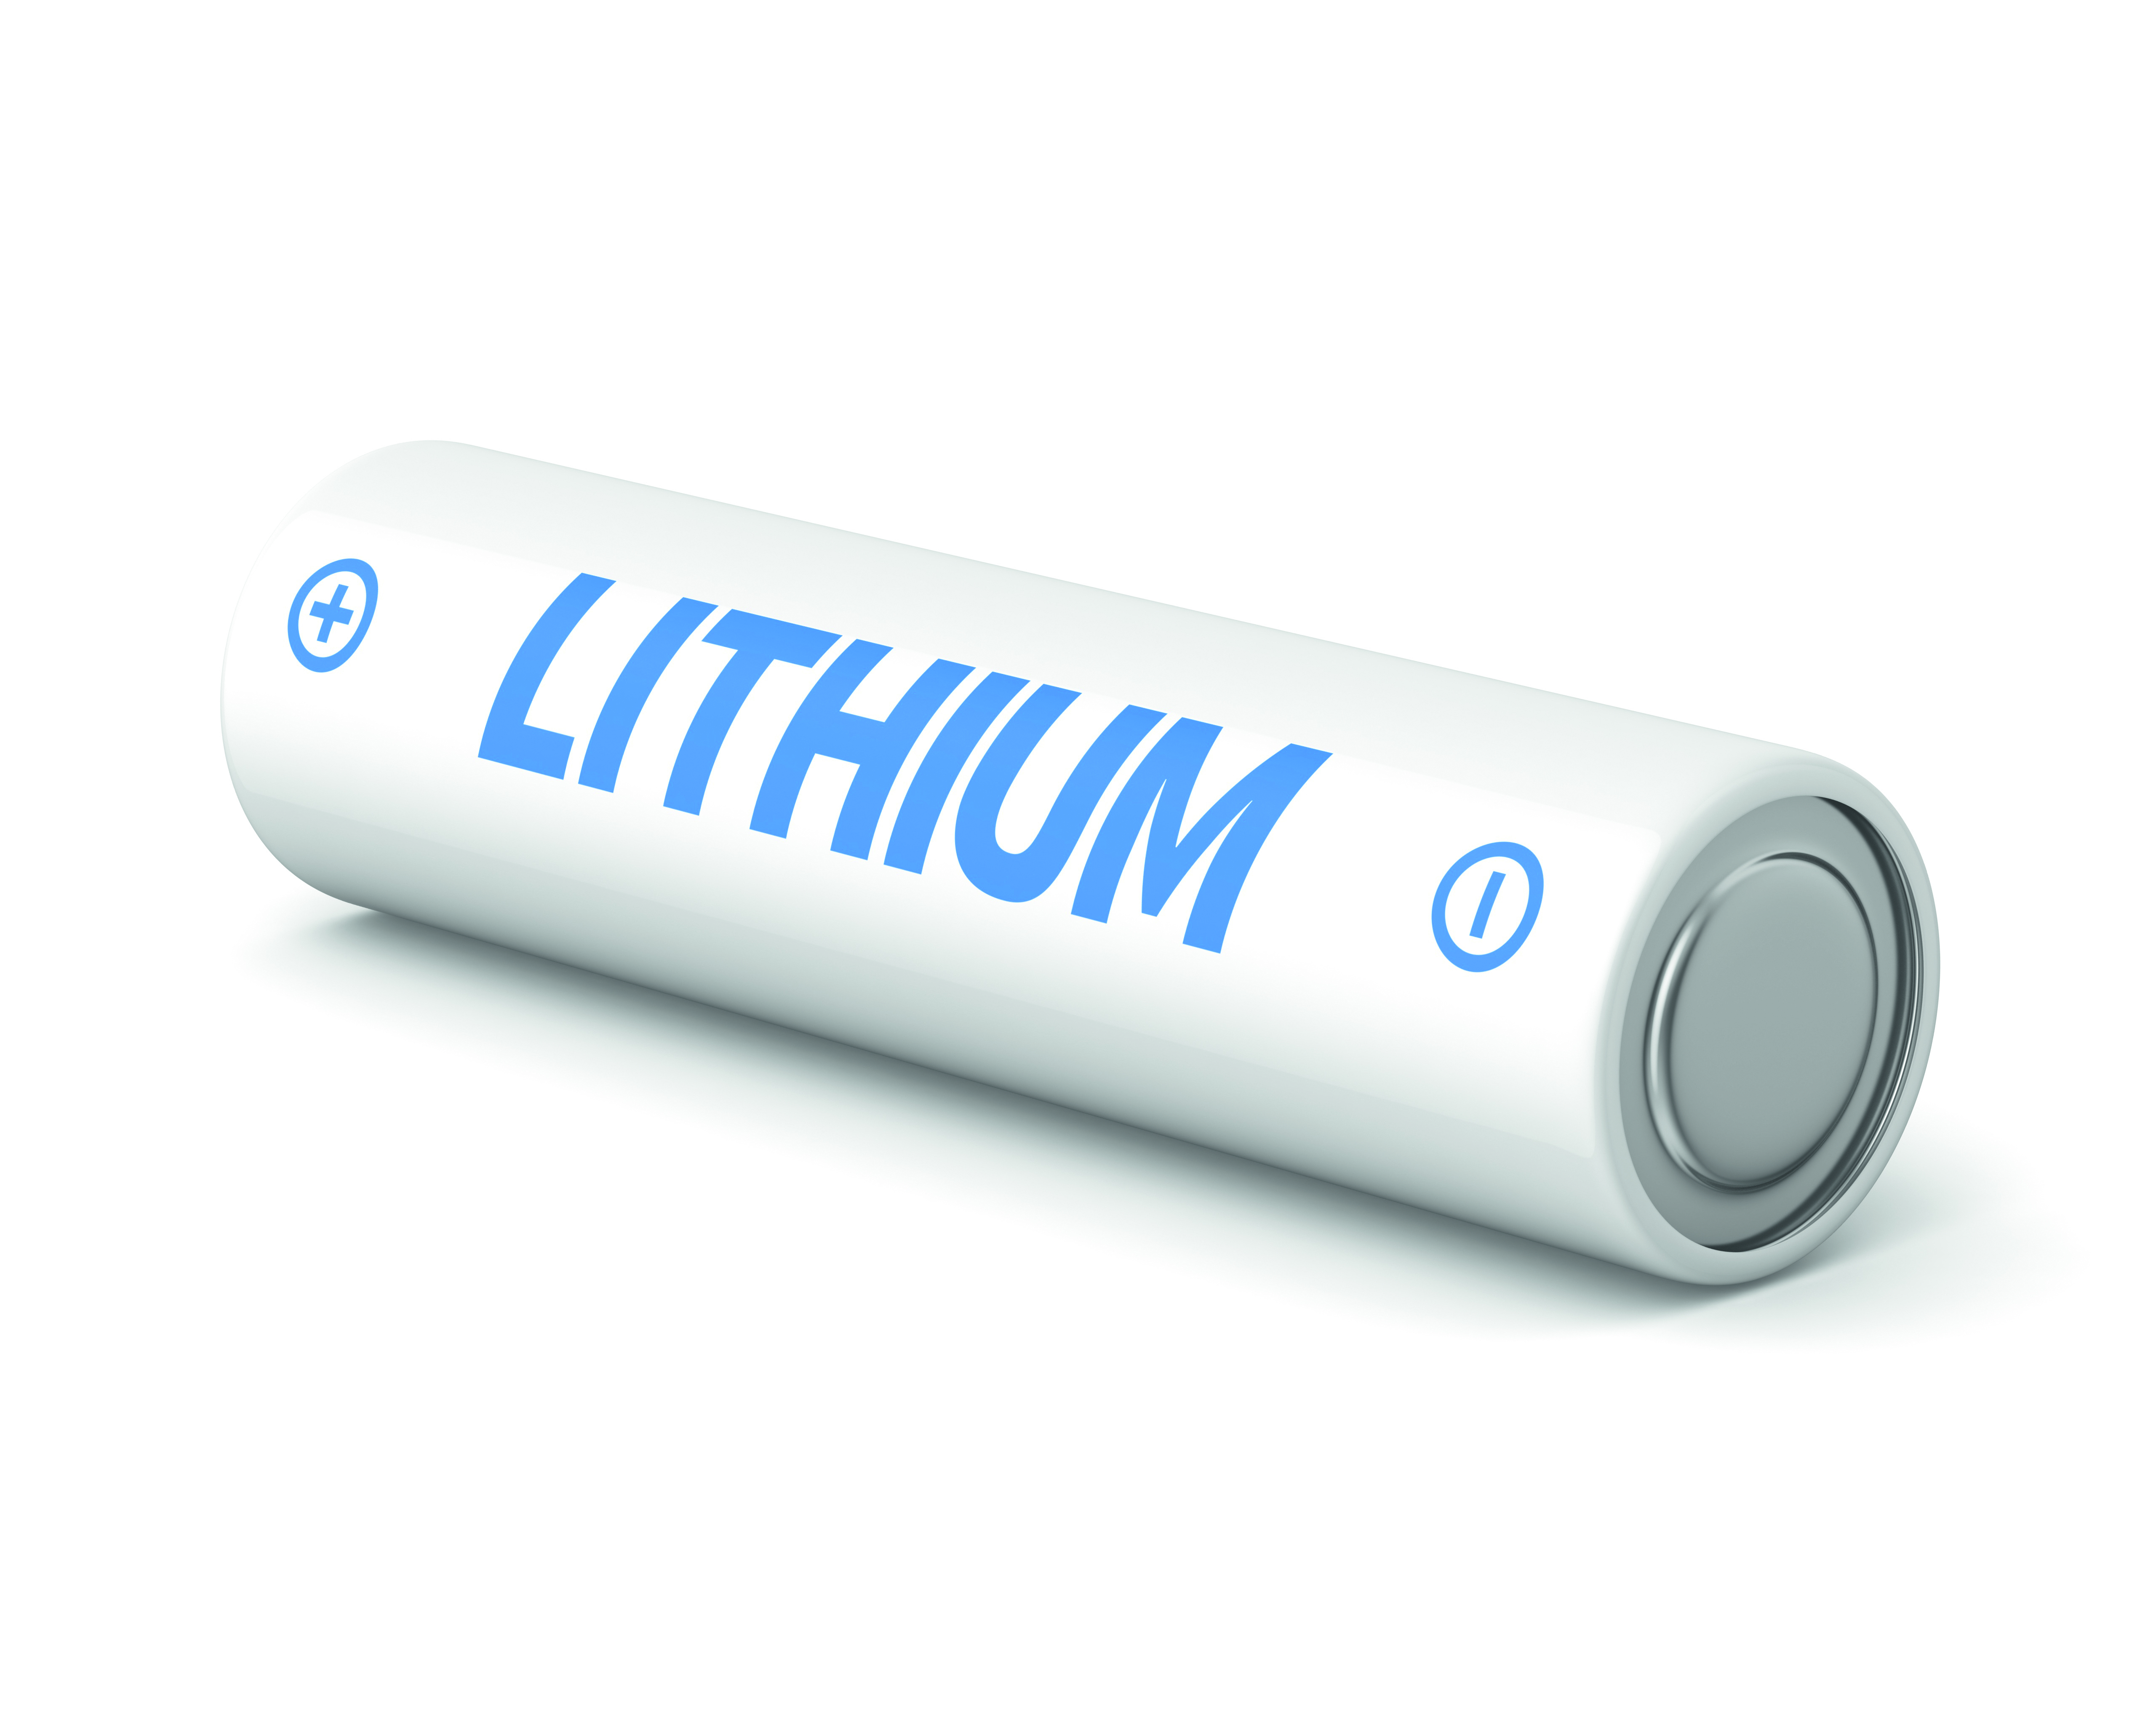 Lithium-Ionen-Batterie und welche Technologie dahinter steckt